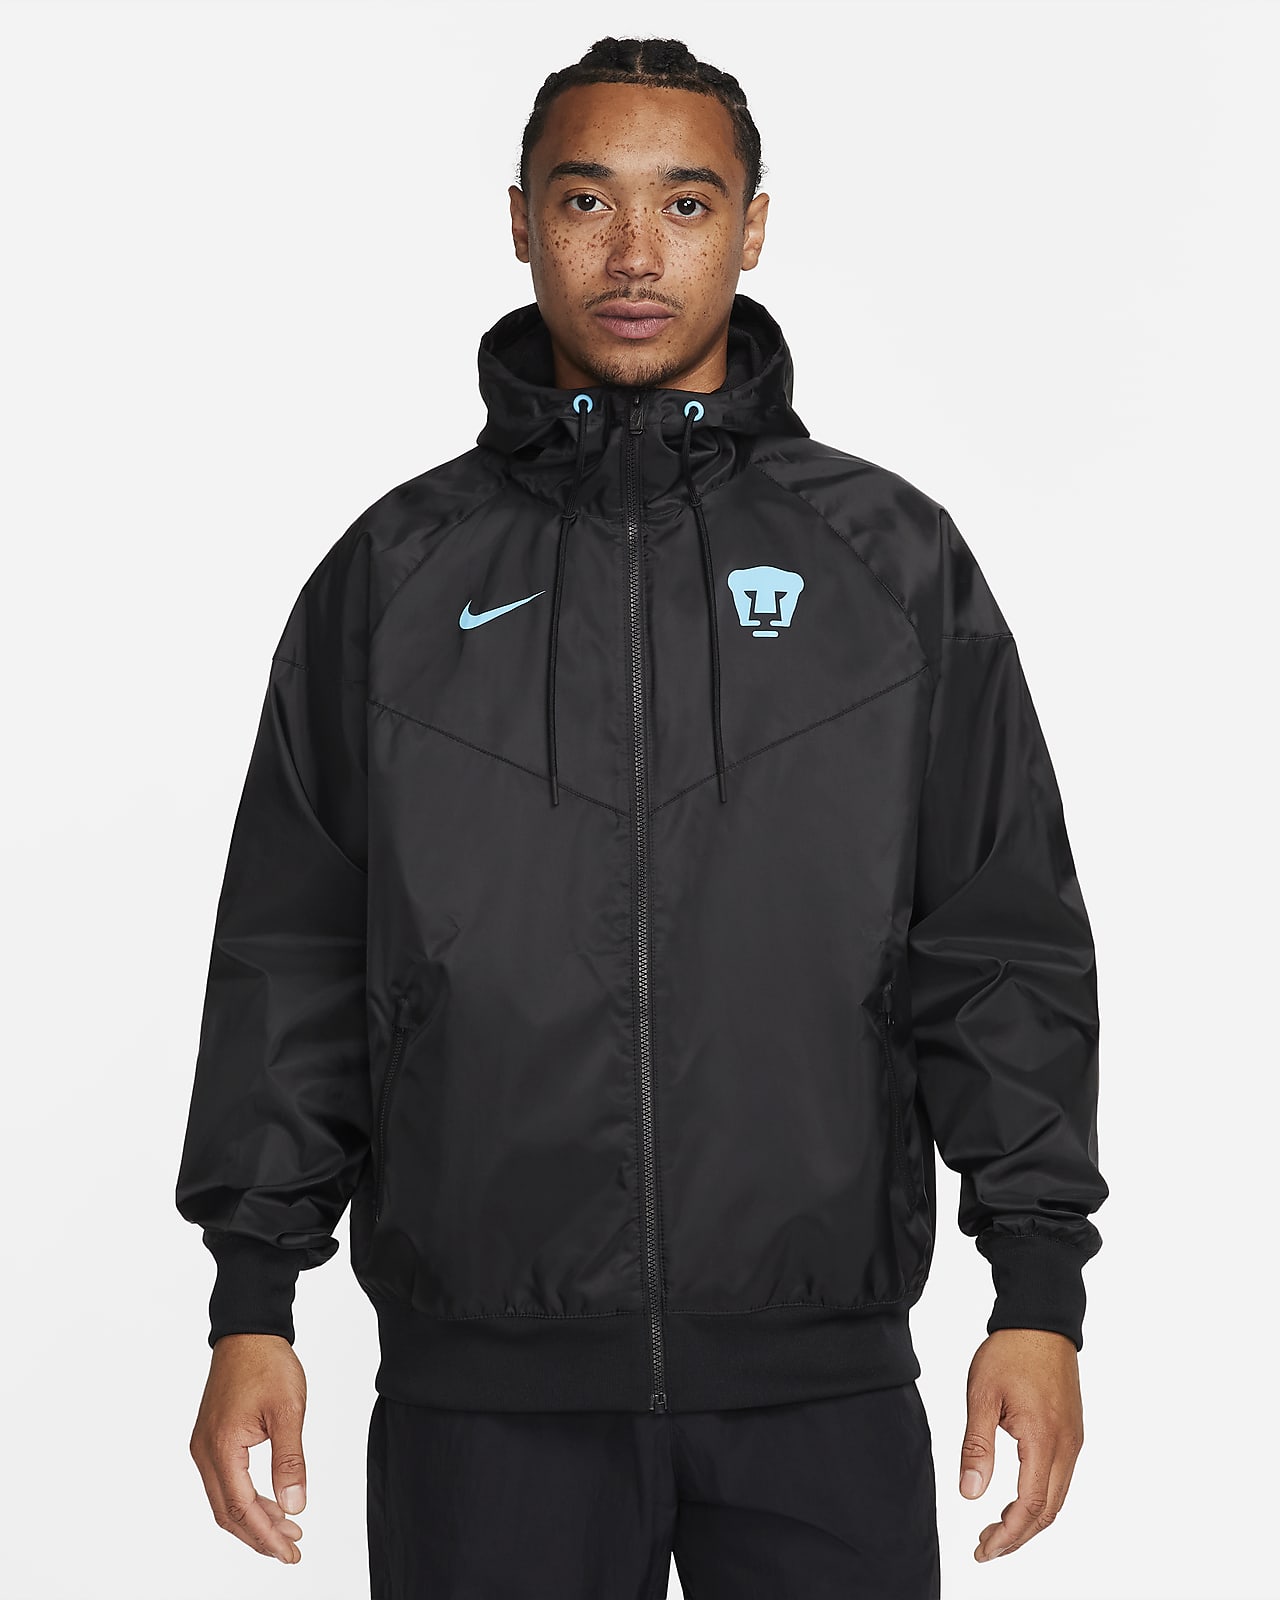 Nike Woven Windrunner Hooded Jacket - Men's